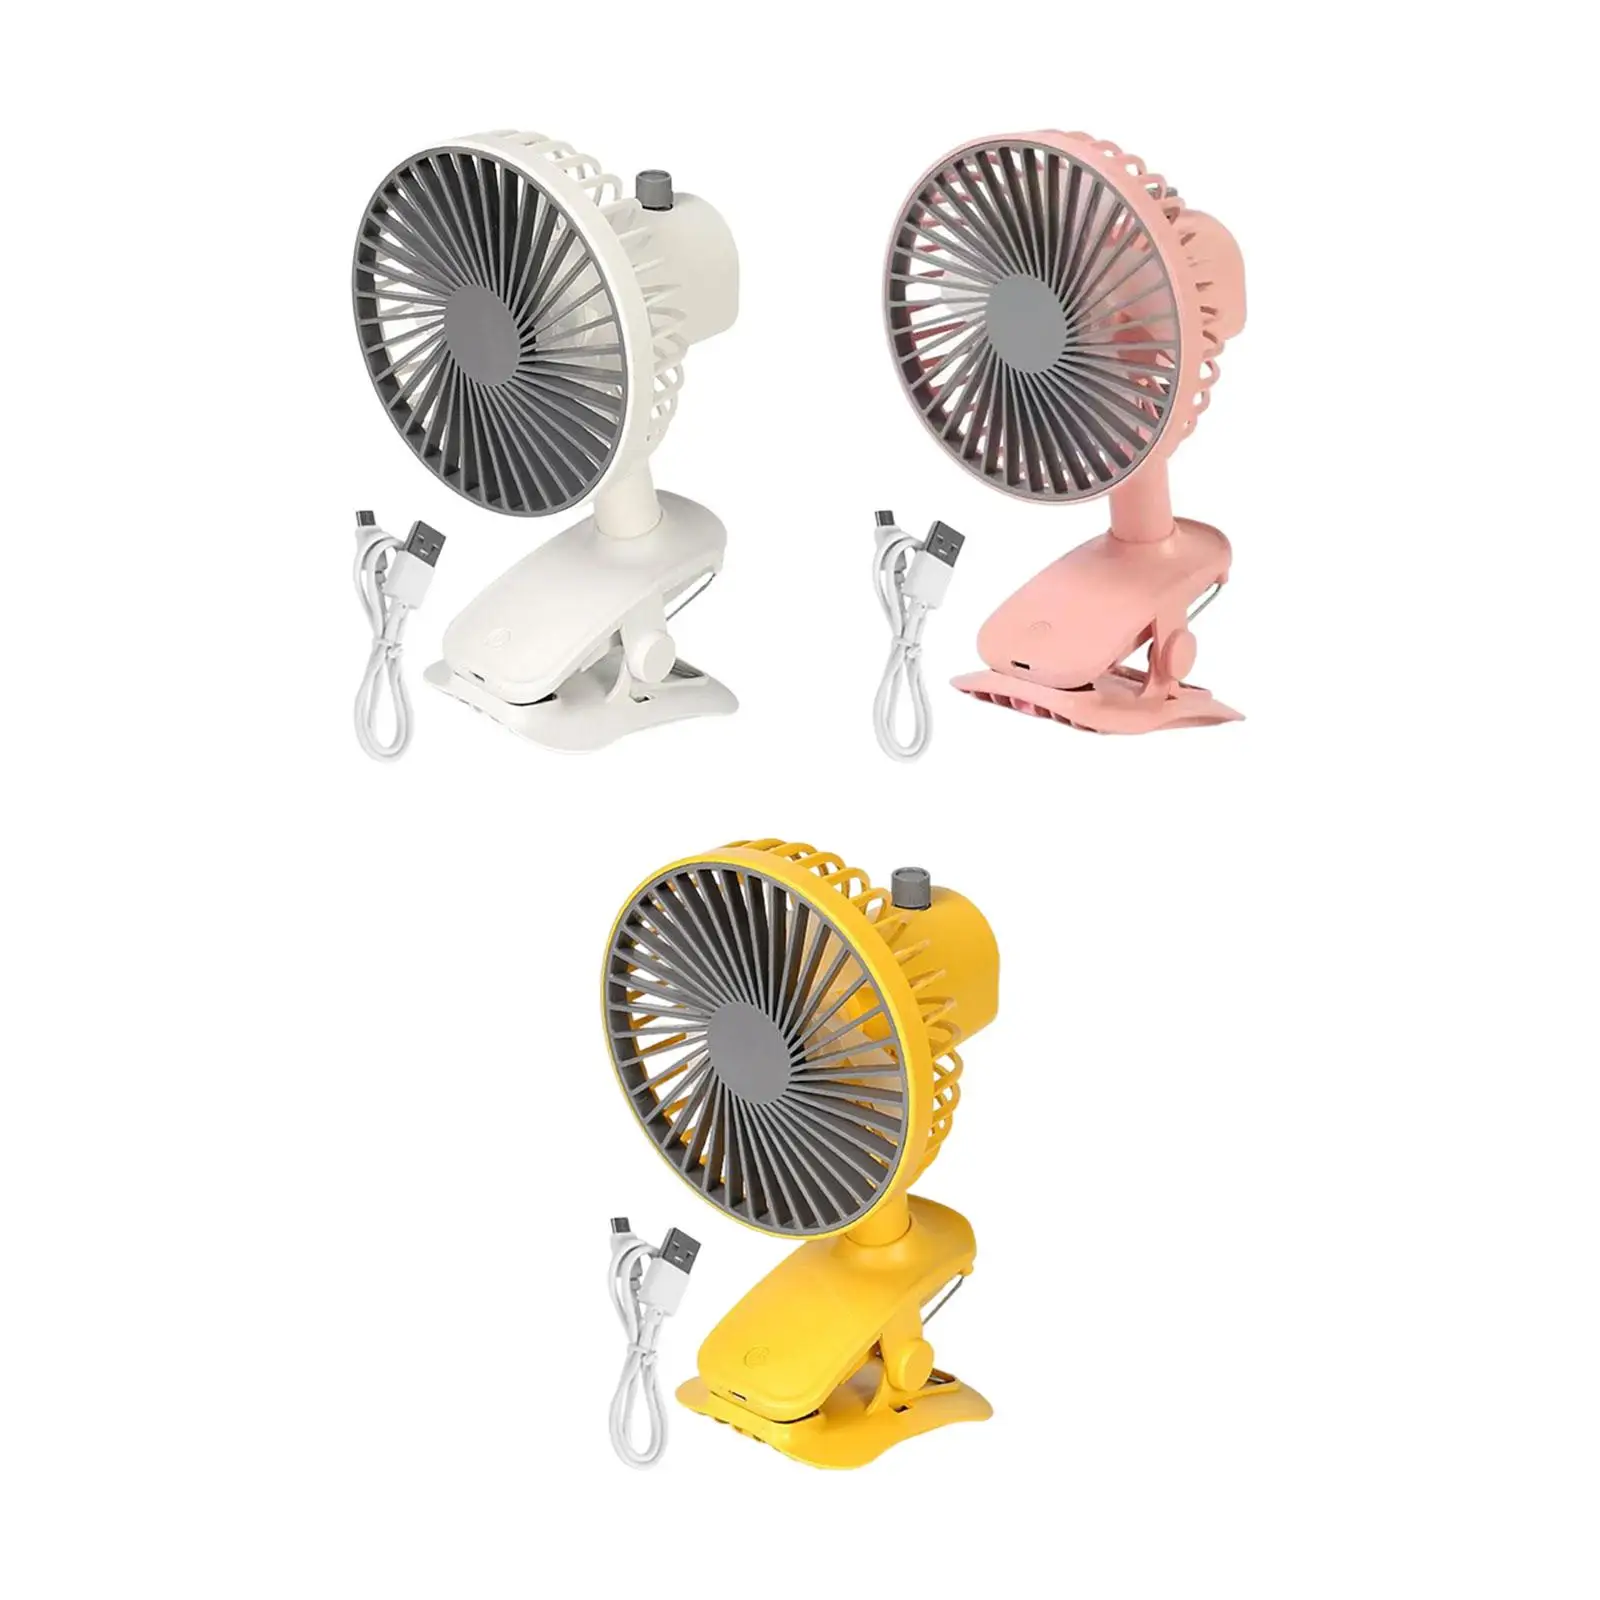 Clip On Fan Rechargeable 3 Speeds Quiet 90° Auto Oscillating Fan USB Desk Fan Personal Cooling Fan for Dorm Home Travel